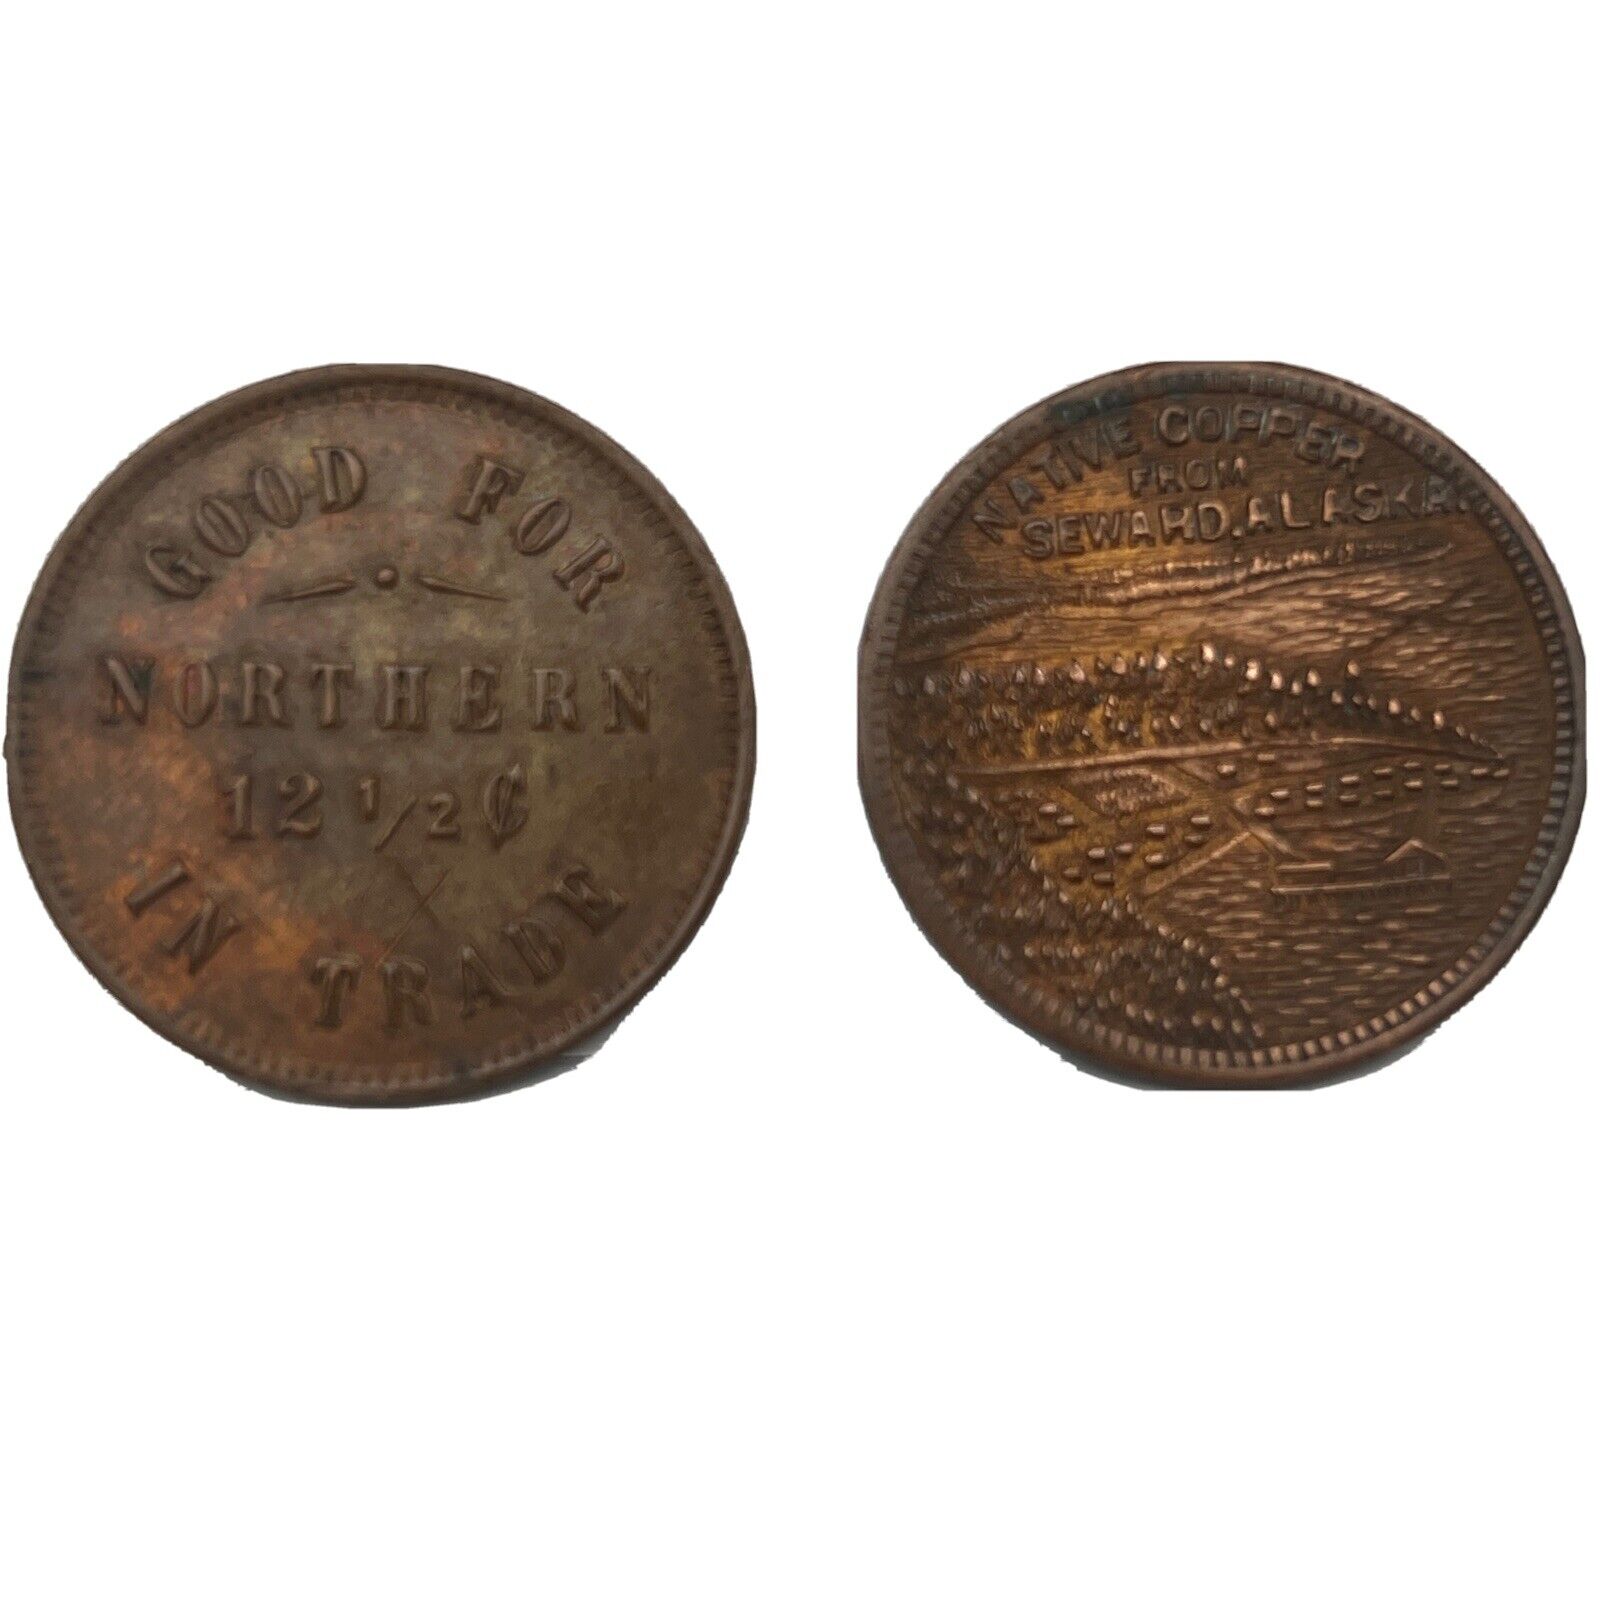 (2x) Native Copper From Seward, Alaska Trade Token Coin 12 1/2 Cents